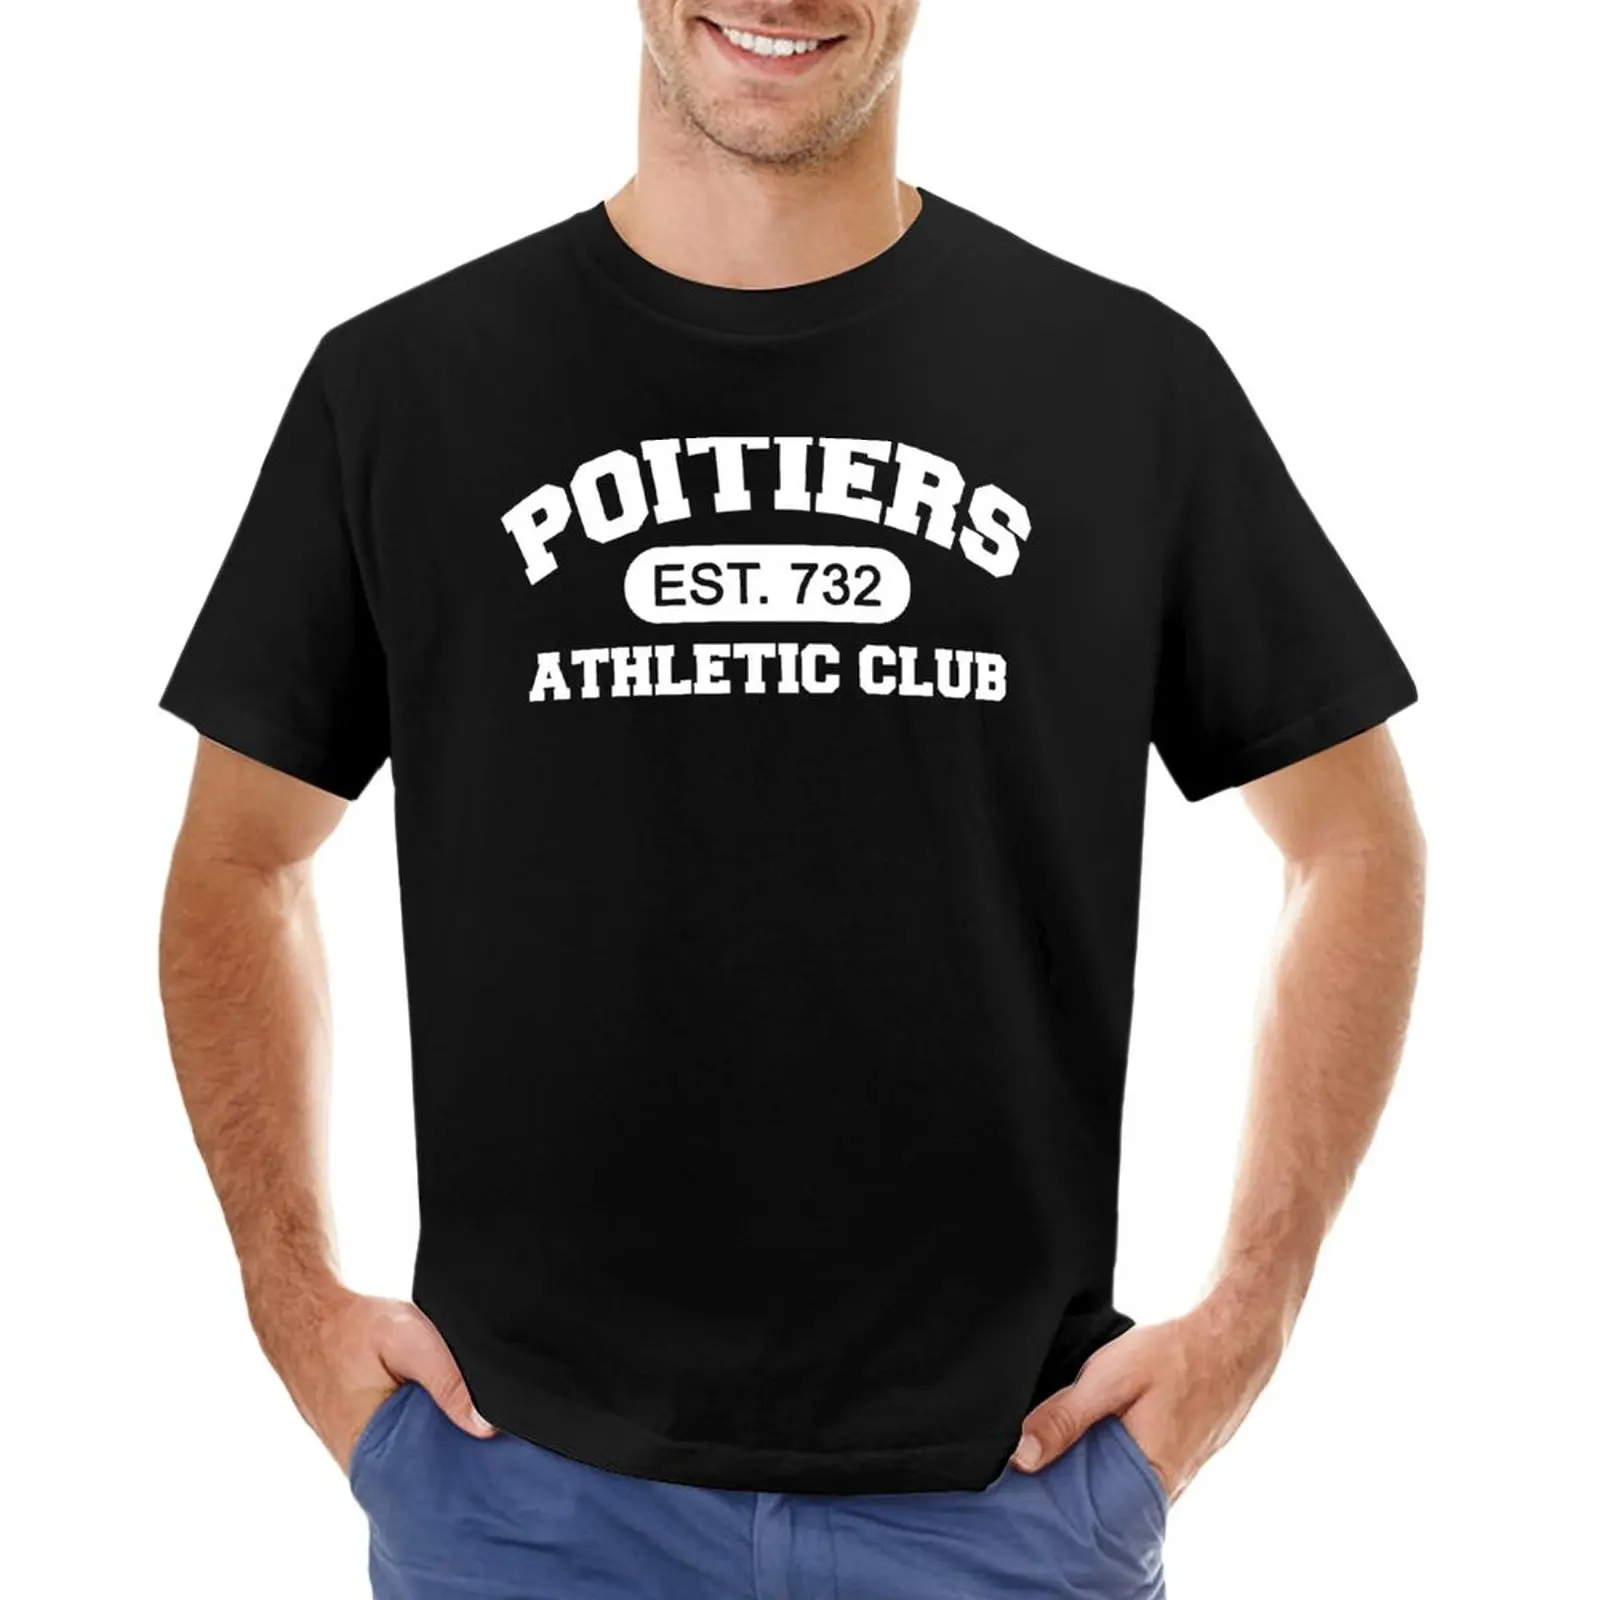 Футболка спортивного клуба Пуатье, графические футболки, футболки оверсайз, футболки для мужчин